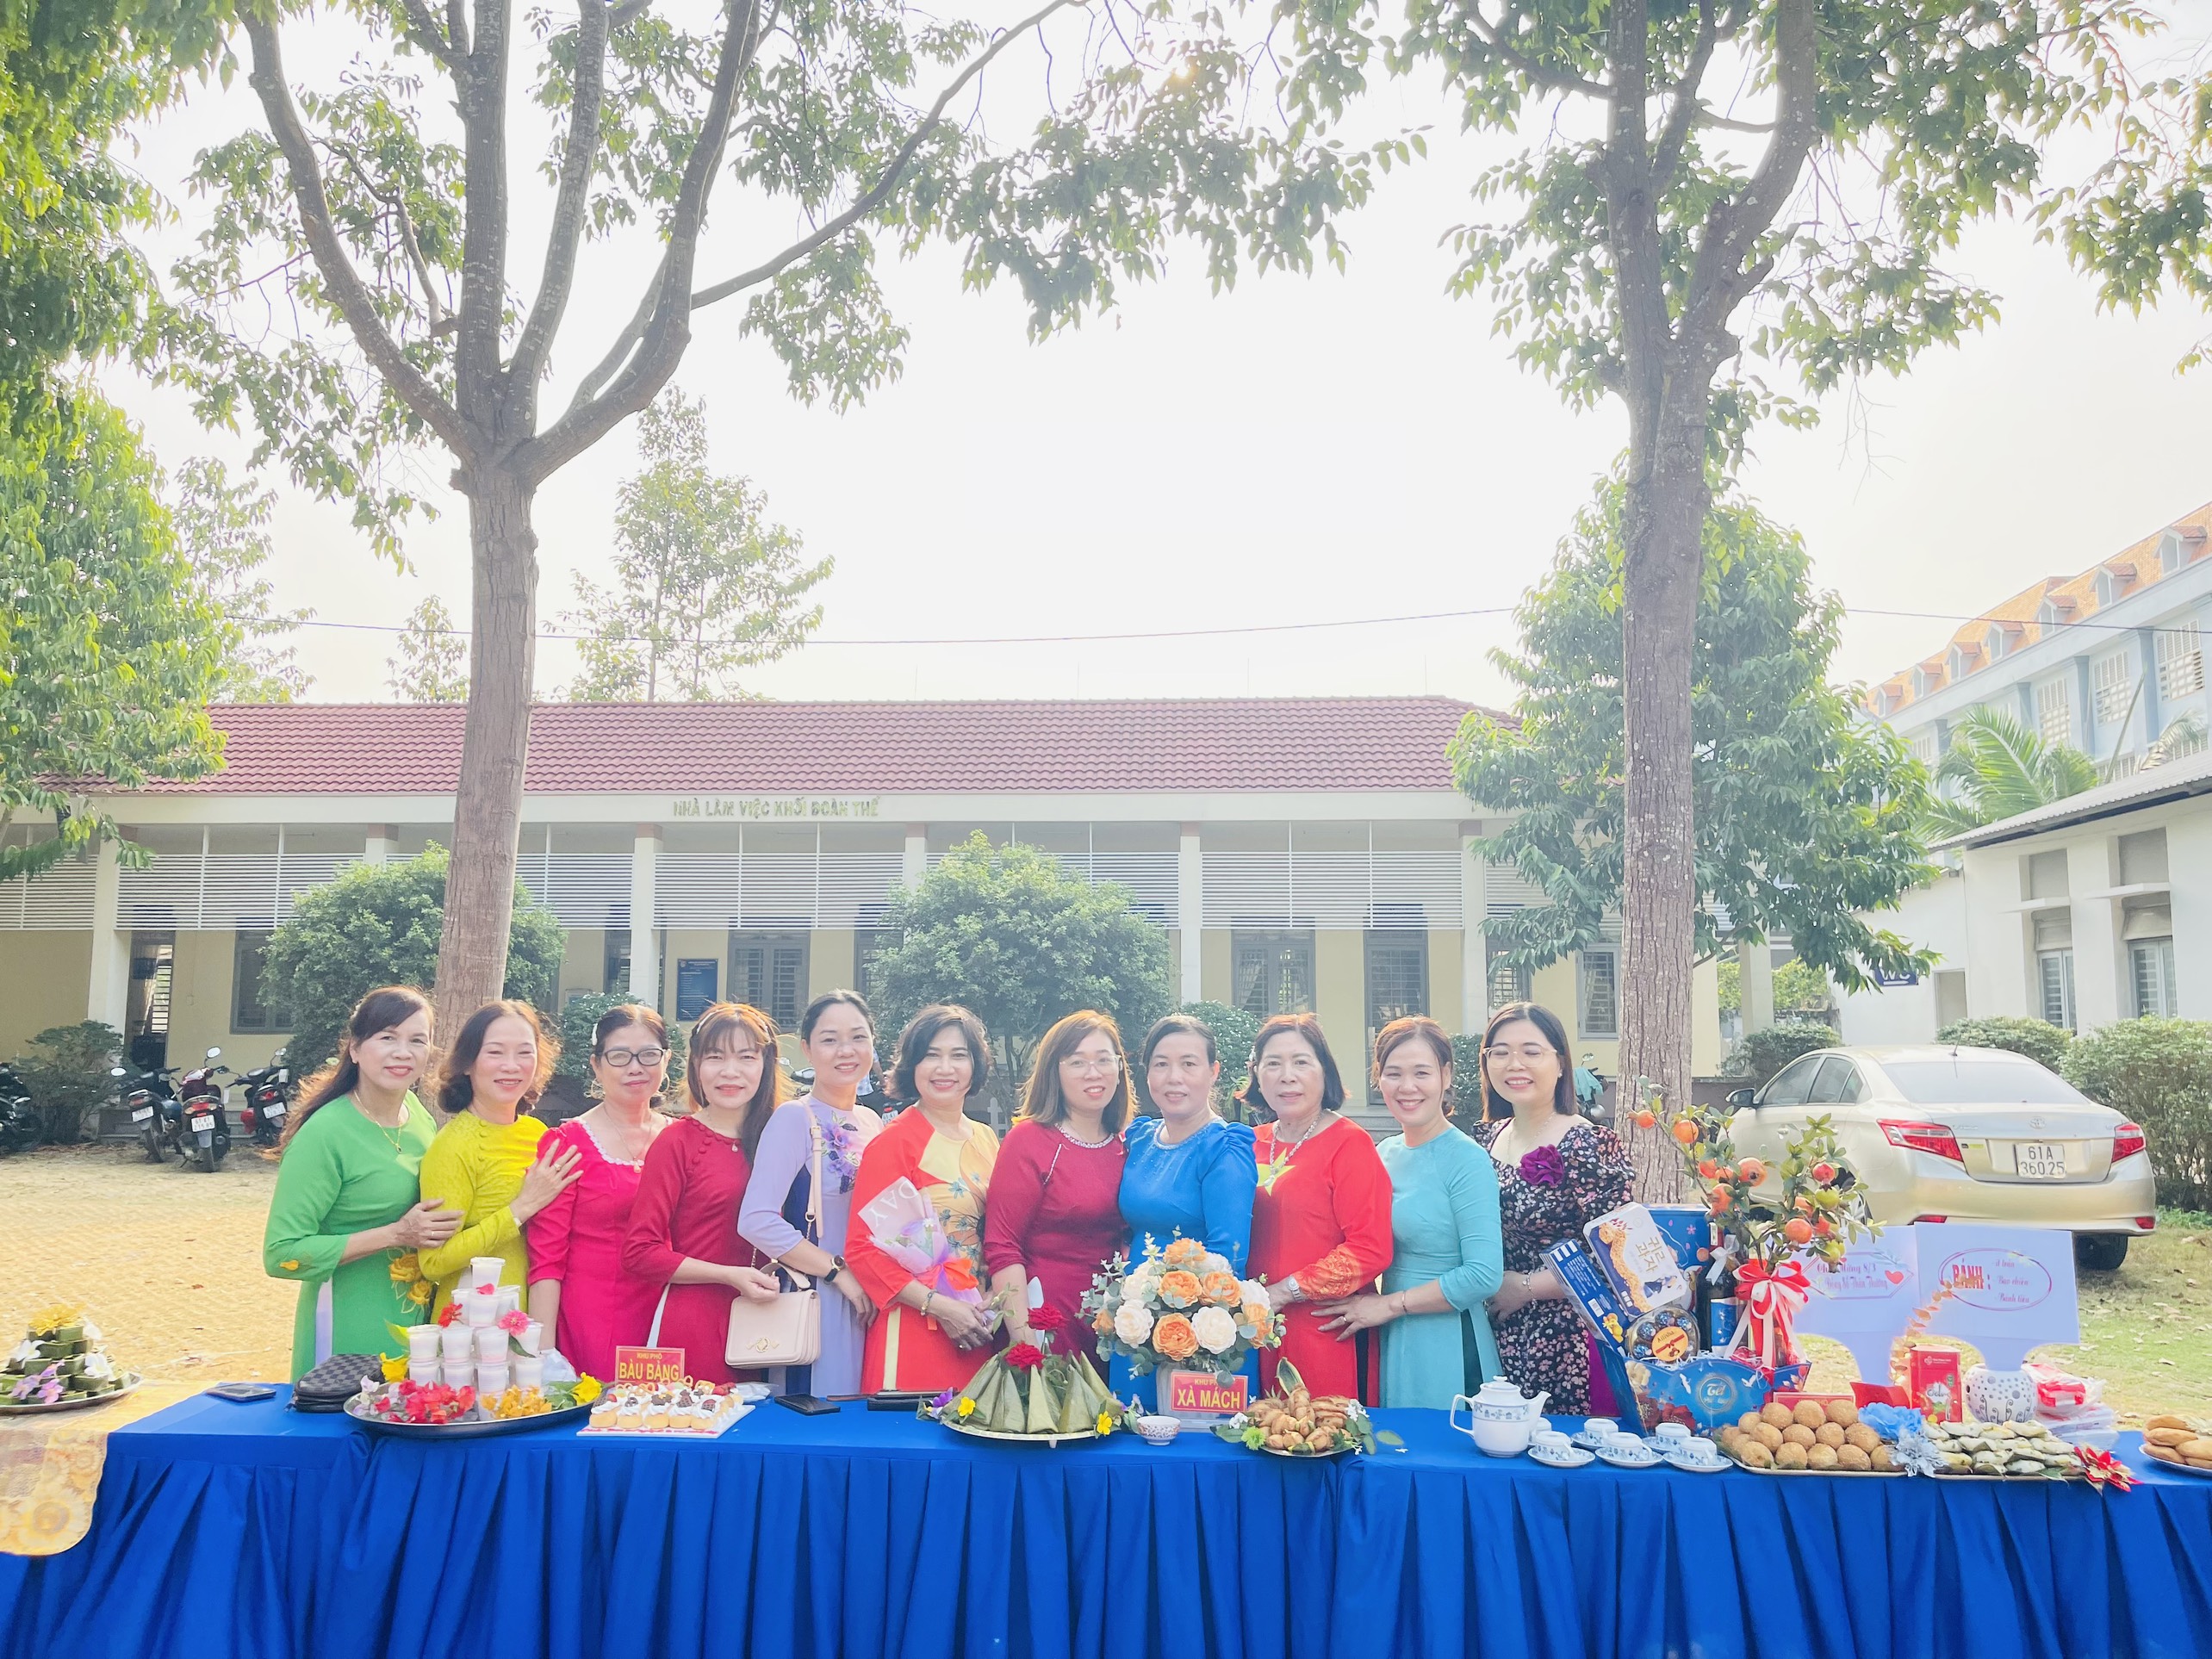 Hội LPNP thị trấn Lai Uyên tổ chức Họp mặt ôn lại truyền thống nhân dịp kỷ niệm 114 năm Ngày Quốc tế Phụ nữ (8/3/1910- 8/3/2024) và 1984 năm Cuộc khởi nghĩa Hai bà Trưng và giao lưu ẩm thực trưng bày các món bánh đặc sản vùng miền